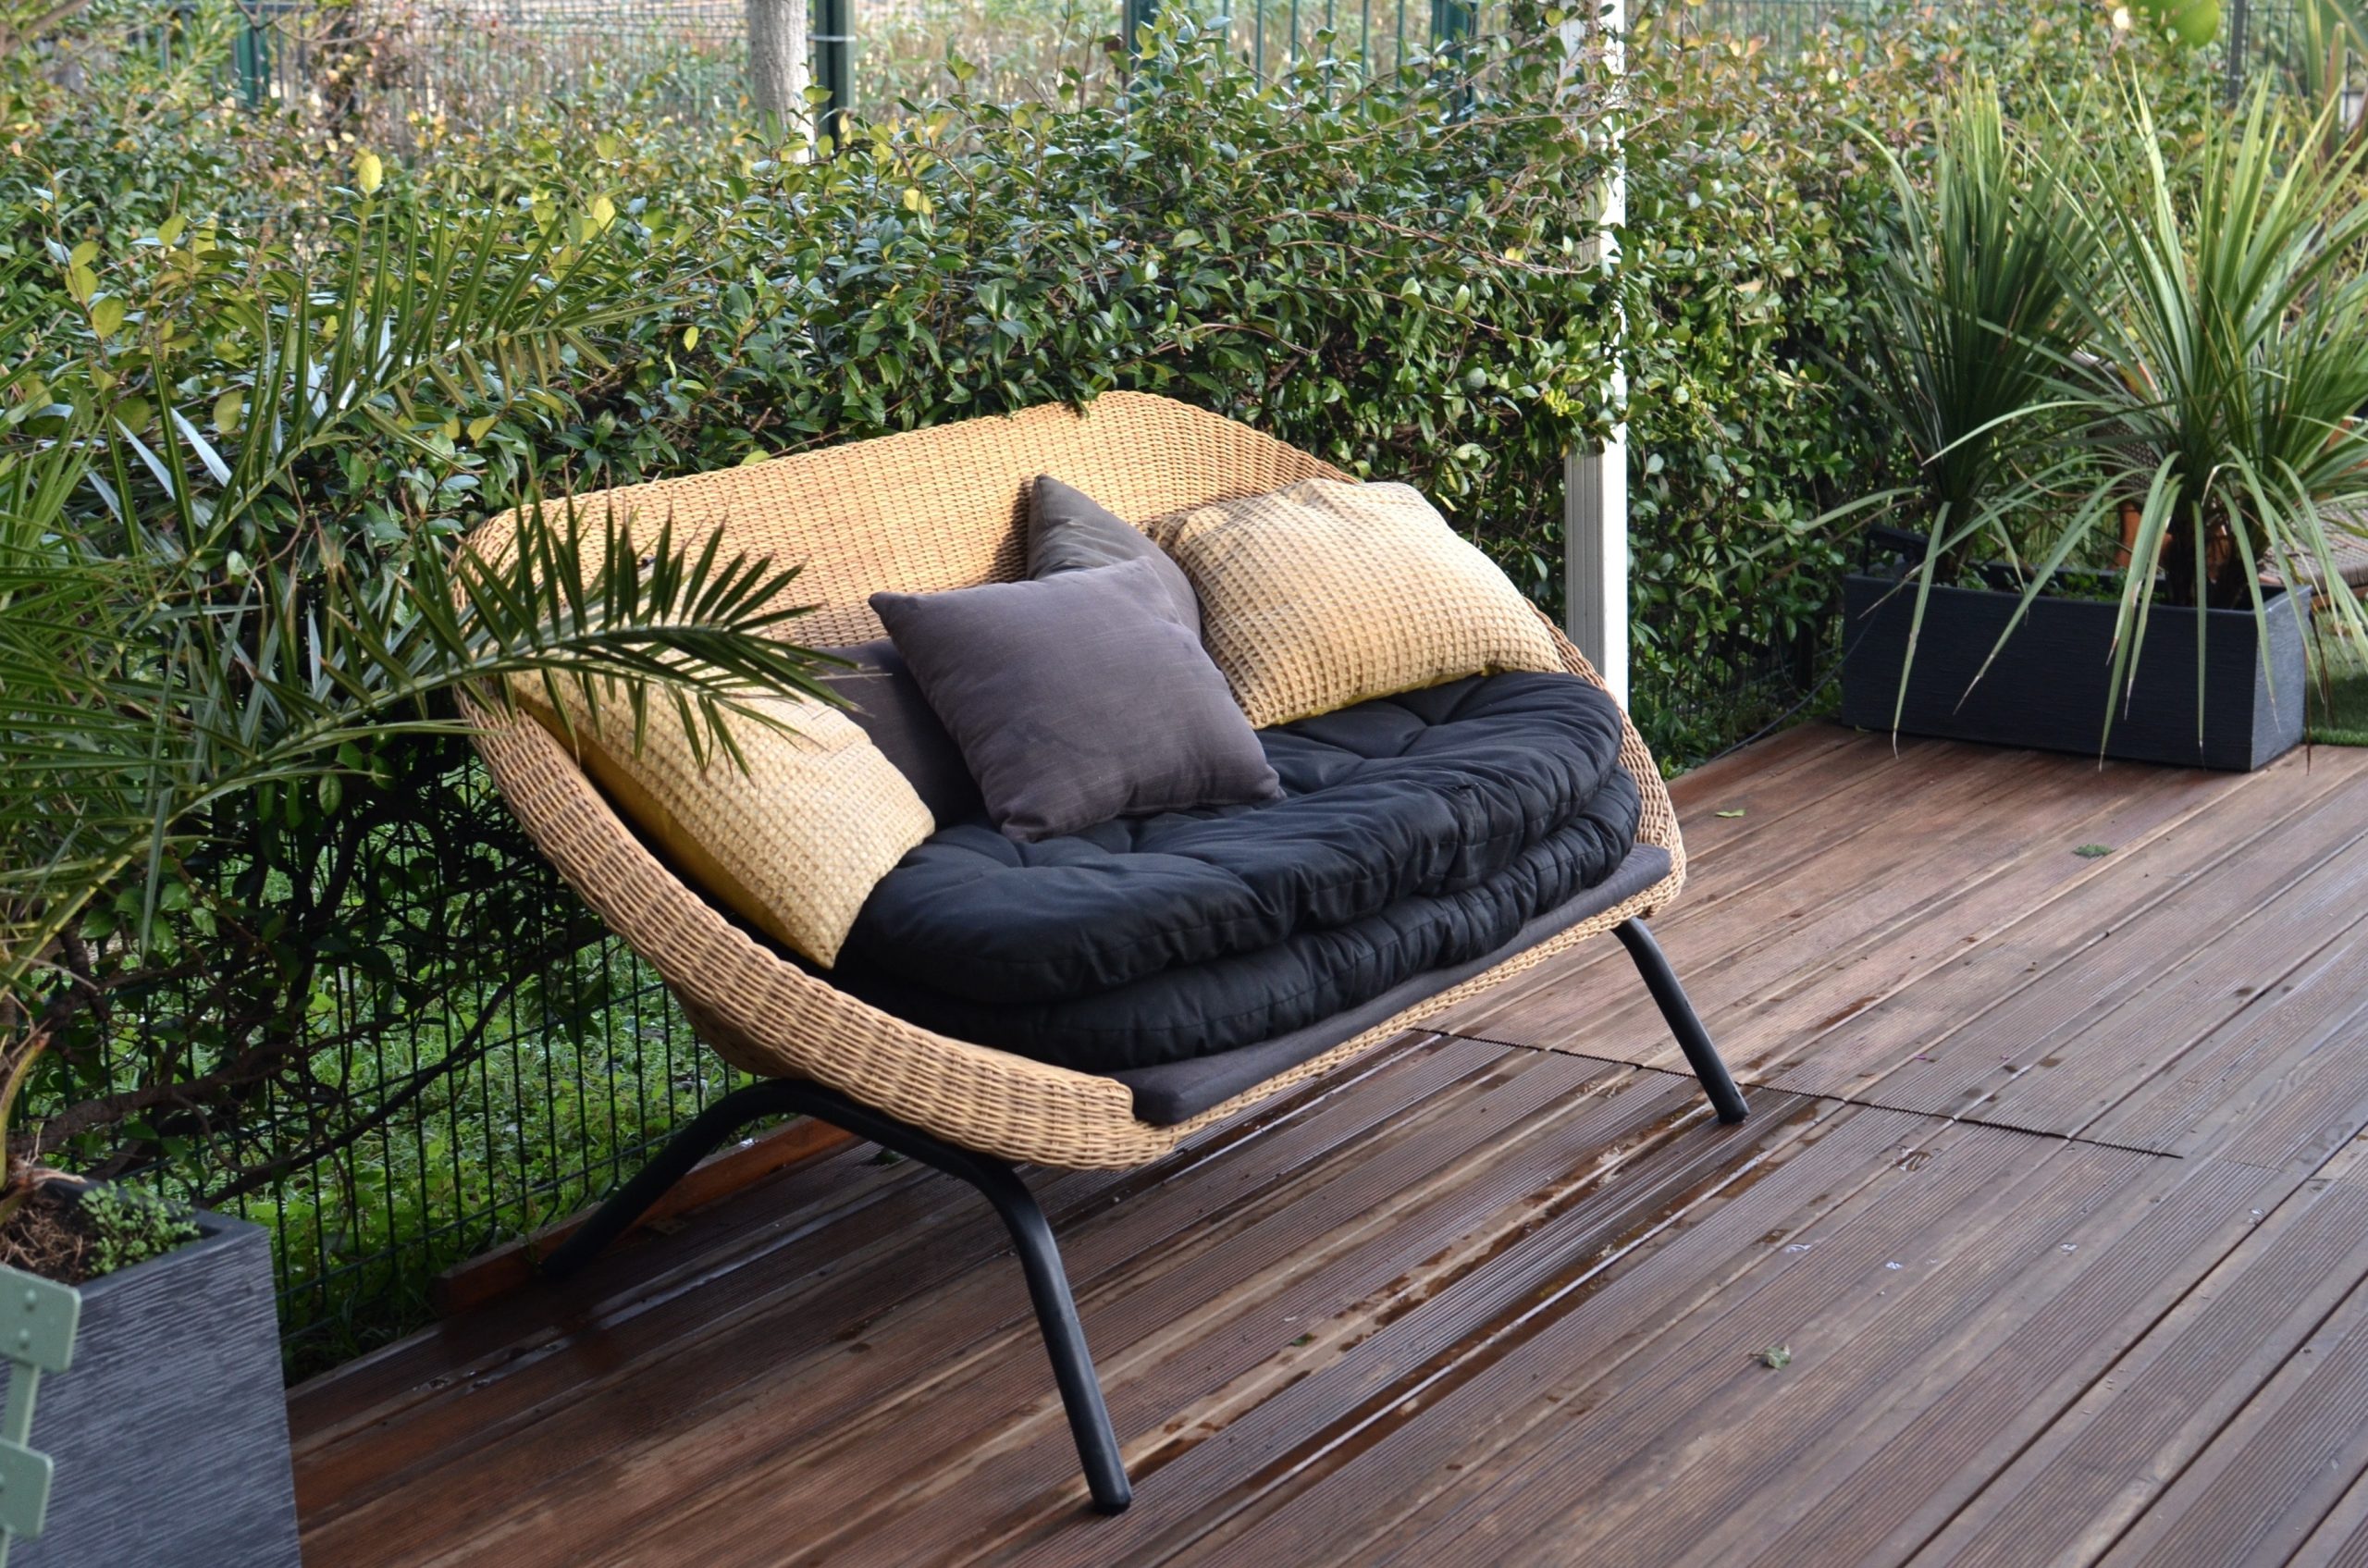 A garden sofa on a patio made of dark oak decking.